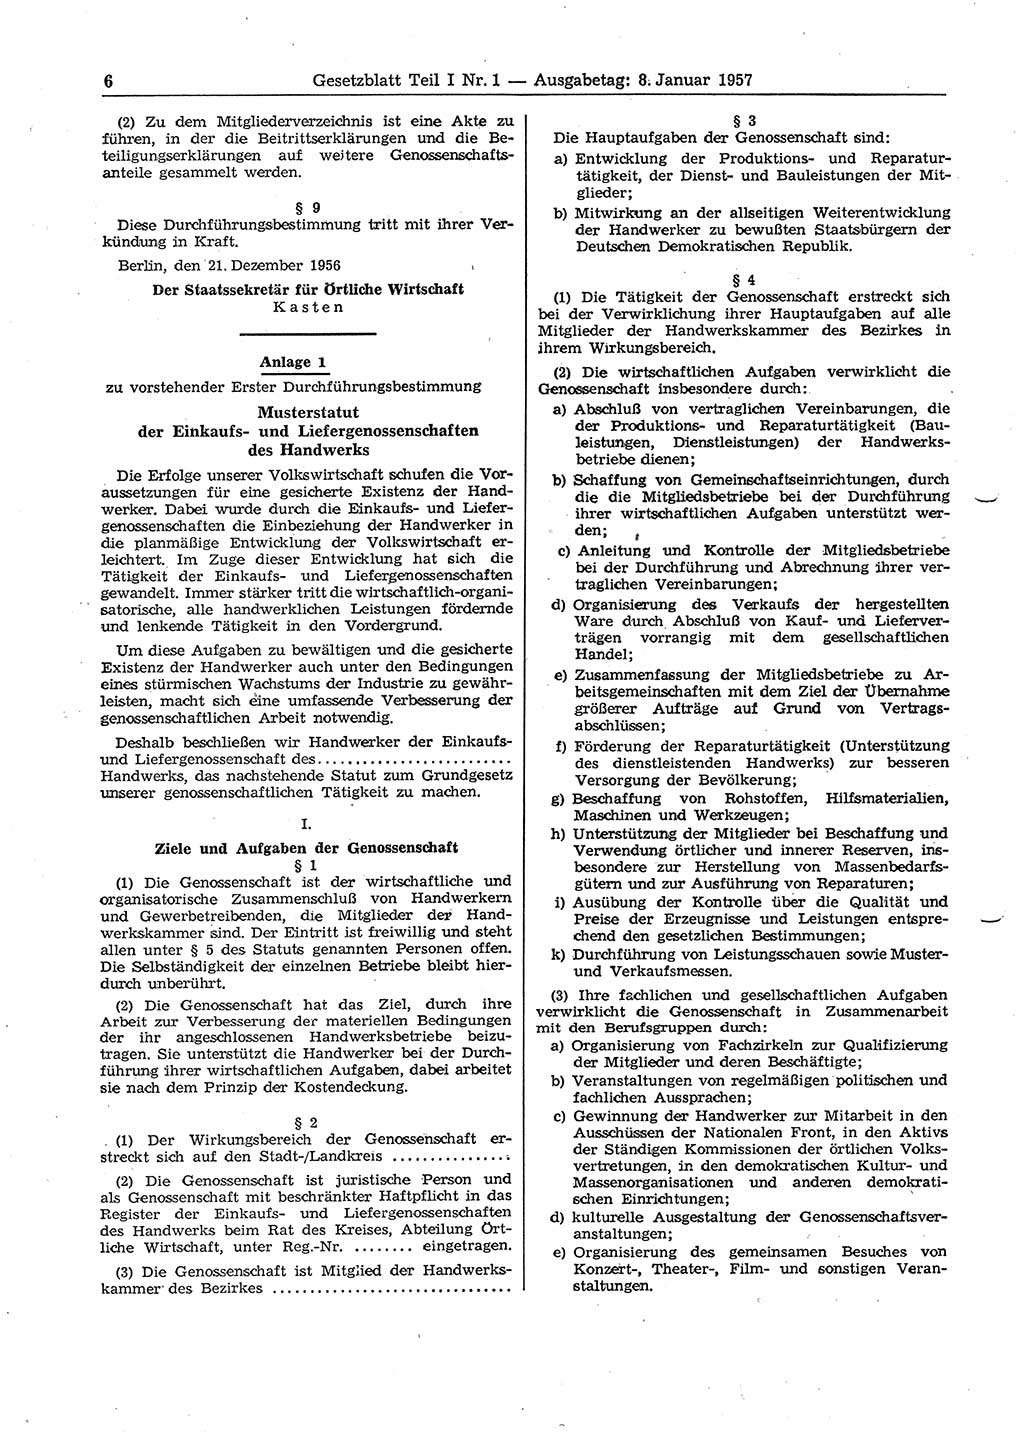 Gesetzblatt (GBl.) der Deutschen Demokratischen Republik (DDR) Teil Ⅰ 1957, Seite 6 (GBl. DDR Ⅰ 1957, S. 6)